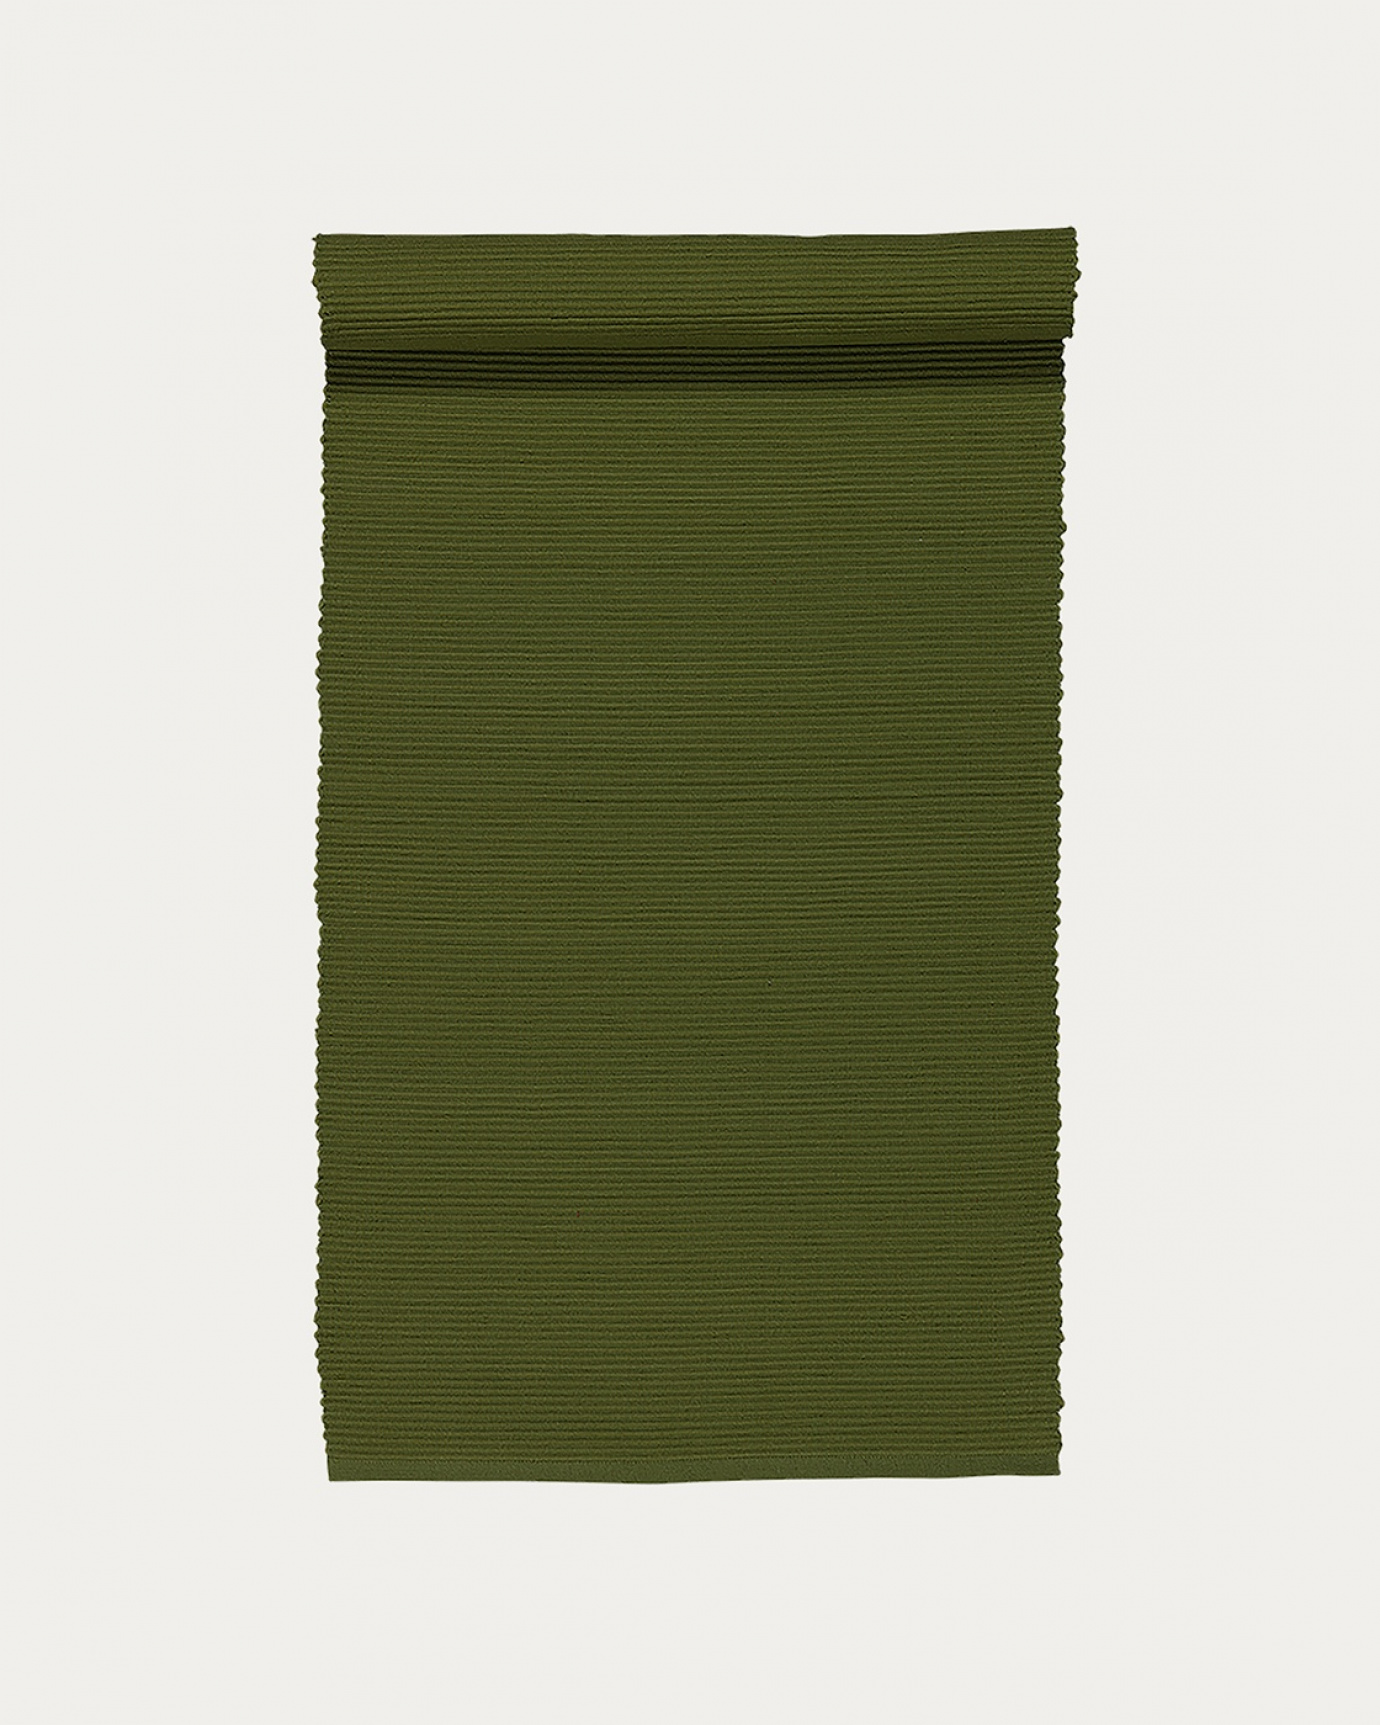 Immagine prodotto verde oliva scuro runner UNI in morbido cotone a costine di qualità di LINUM DESIGN. Dimensioni 45x150 cm.